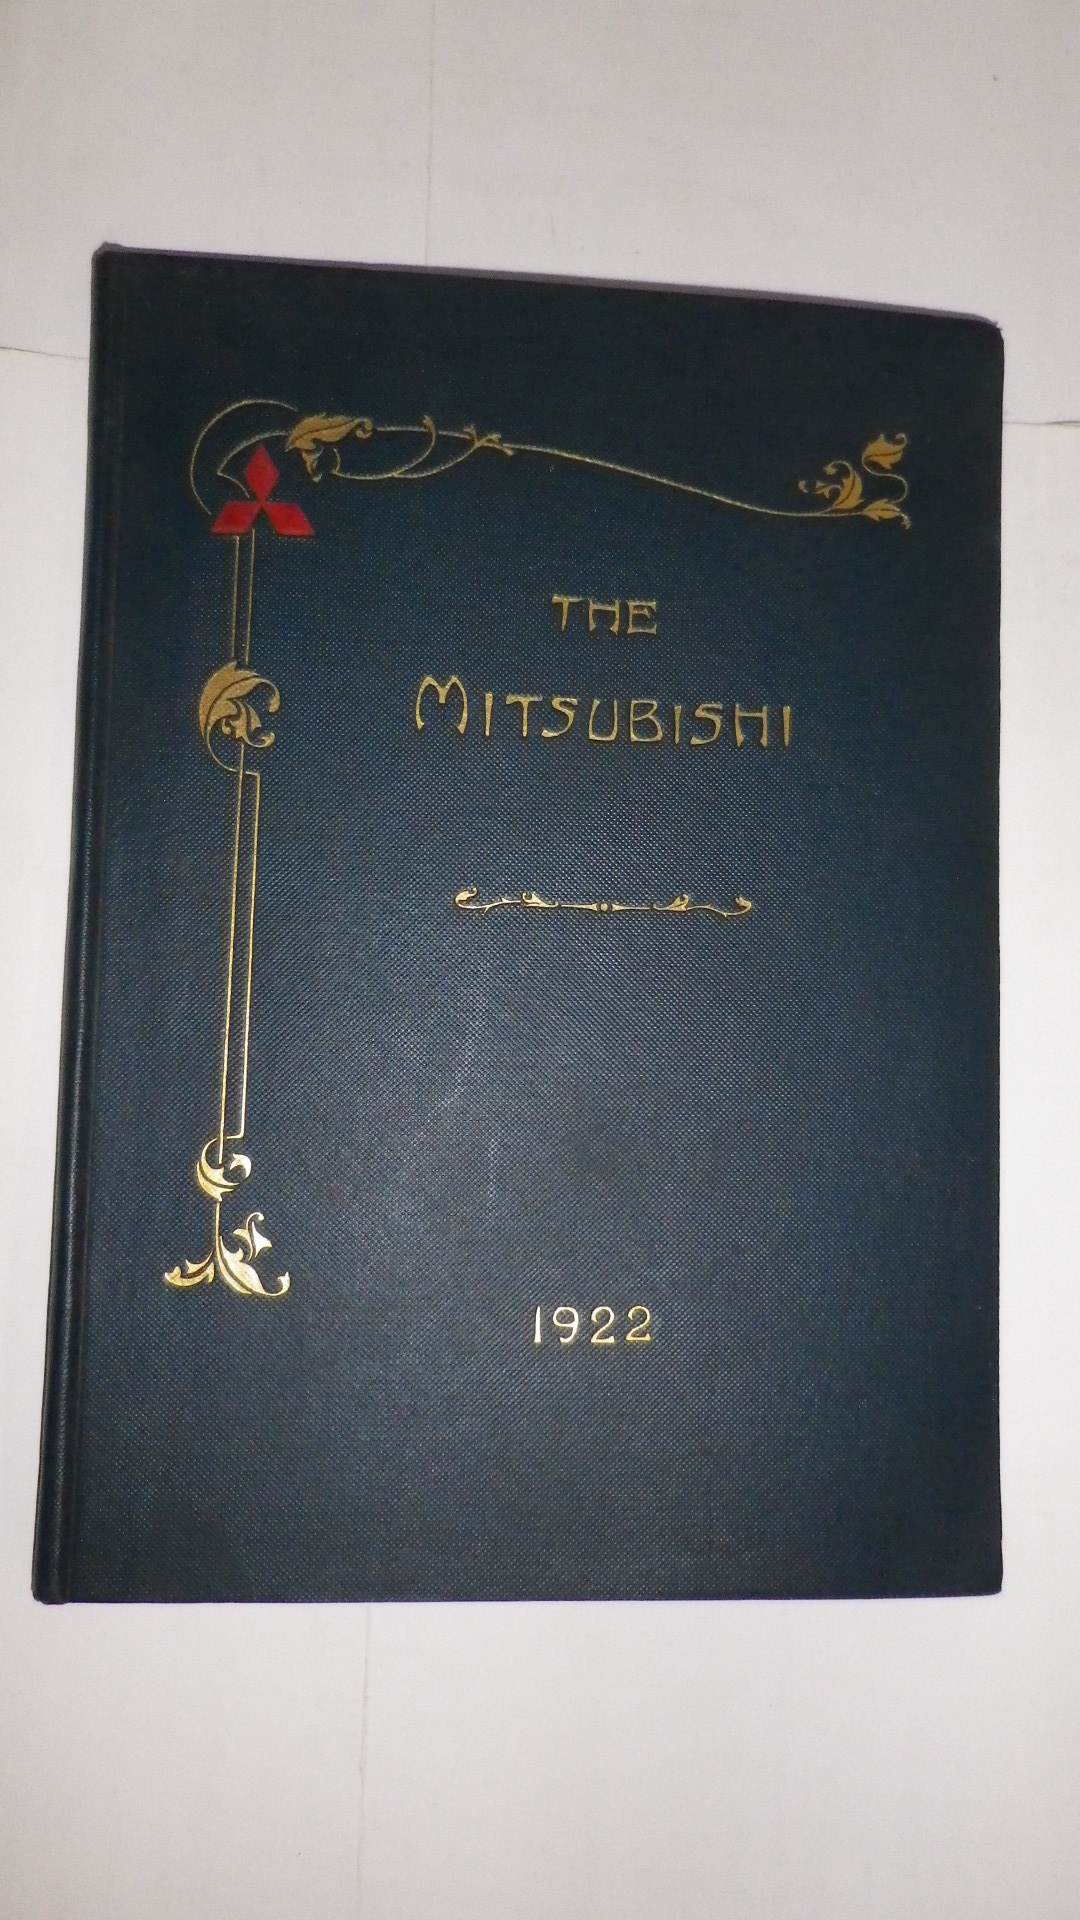 THE MITSUBISHI